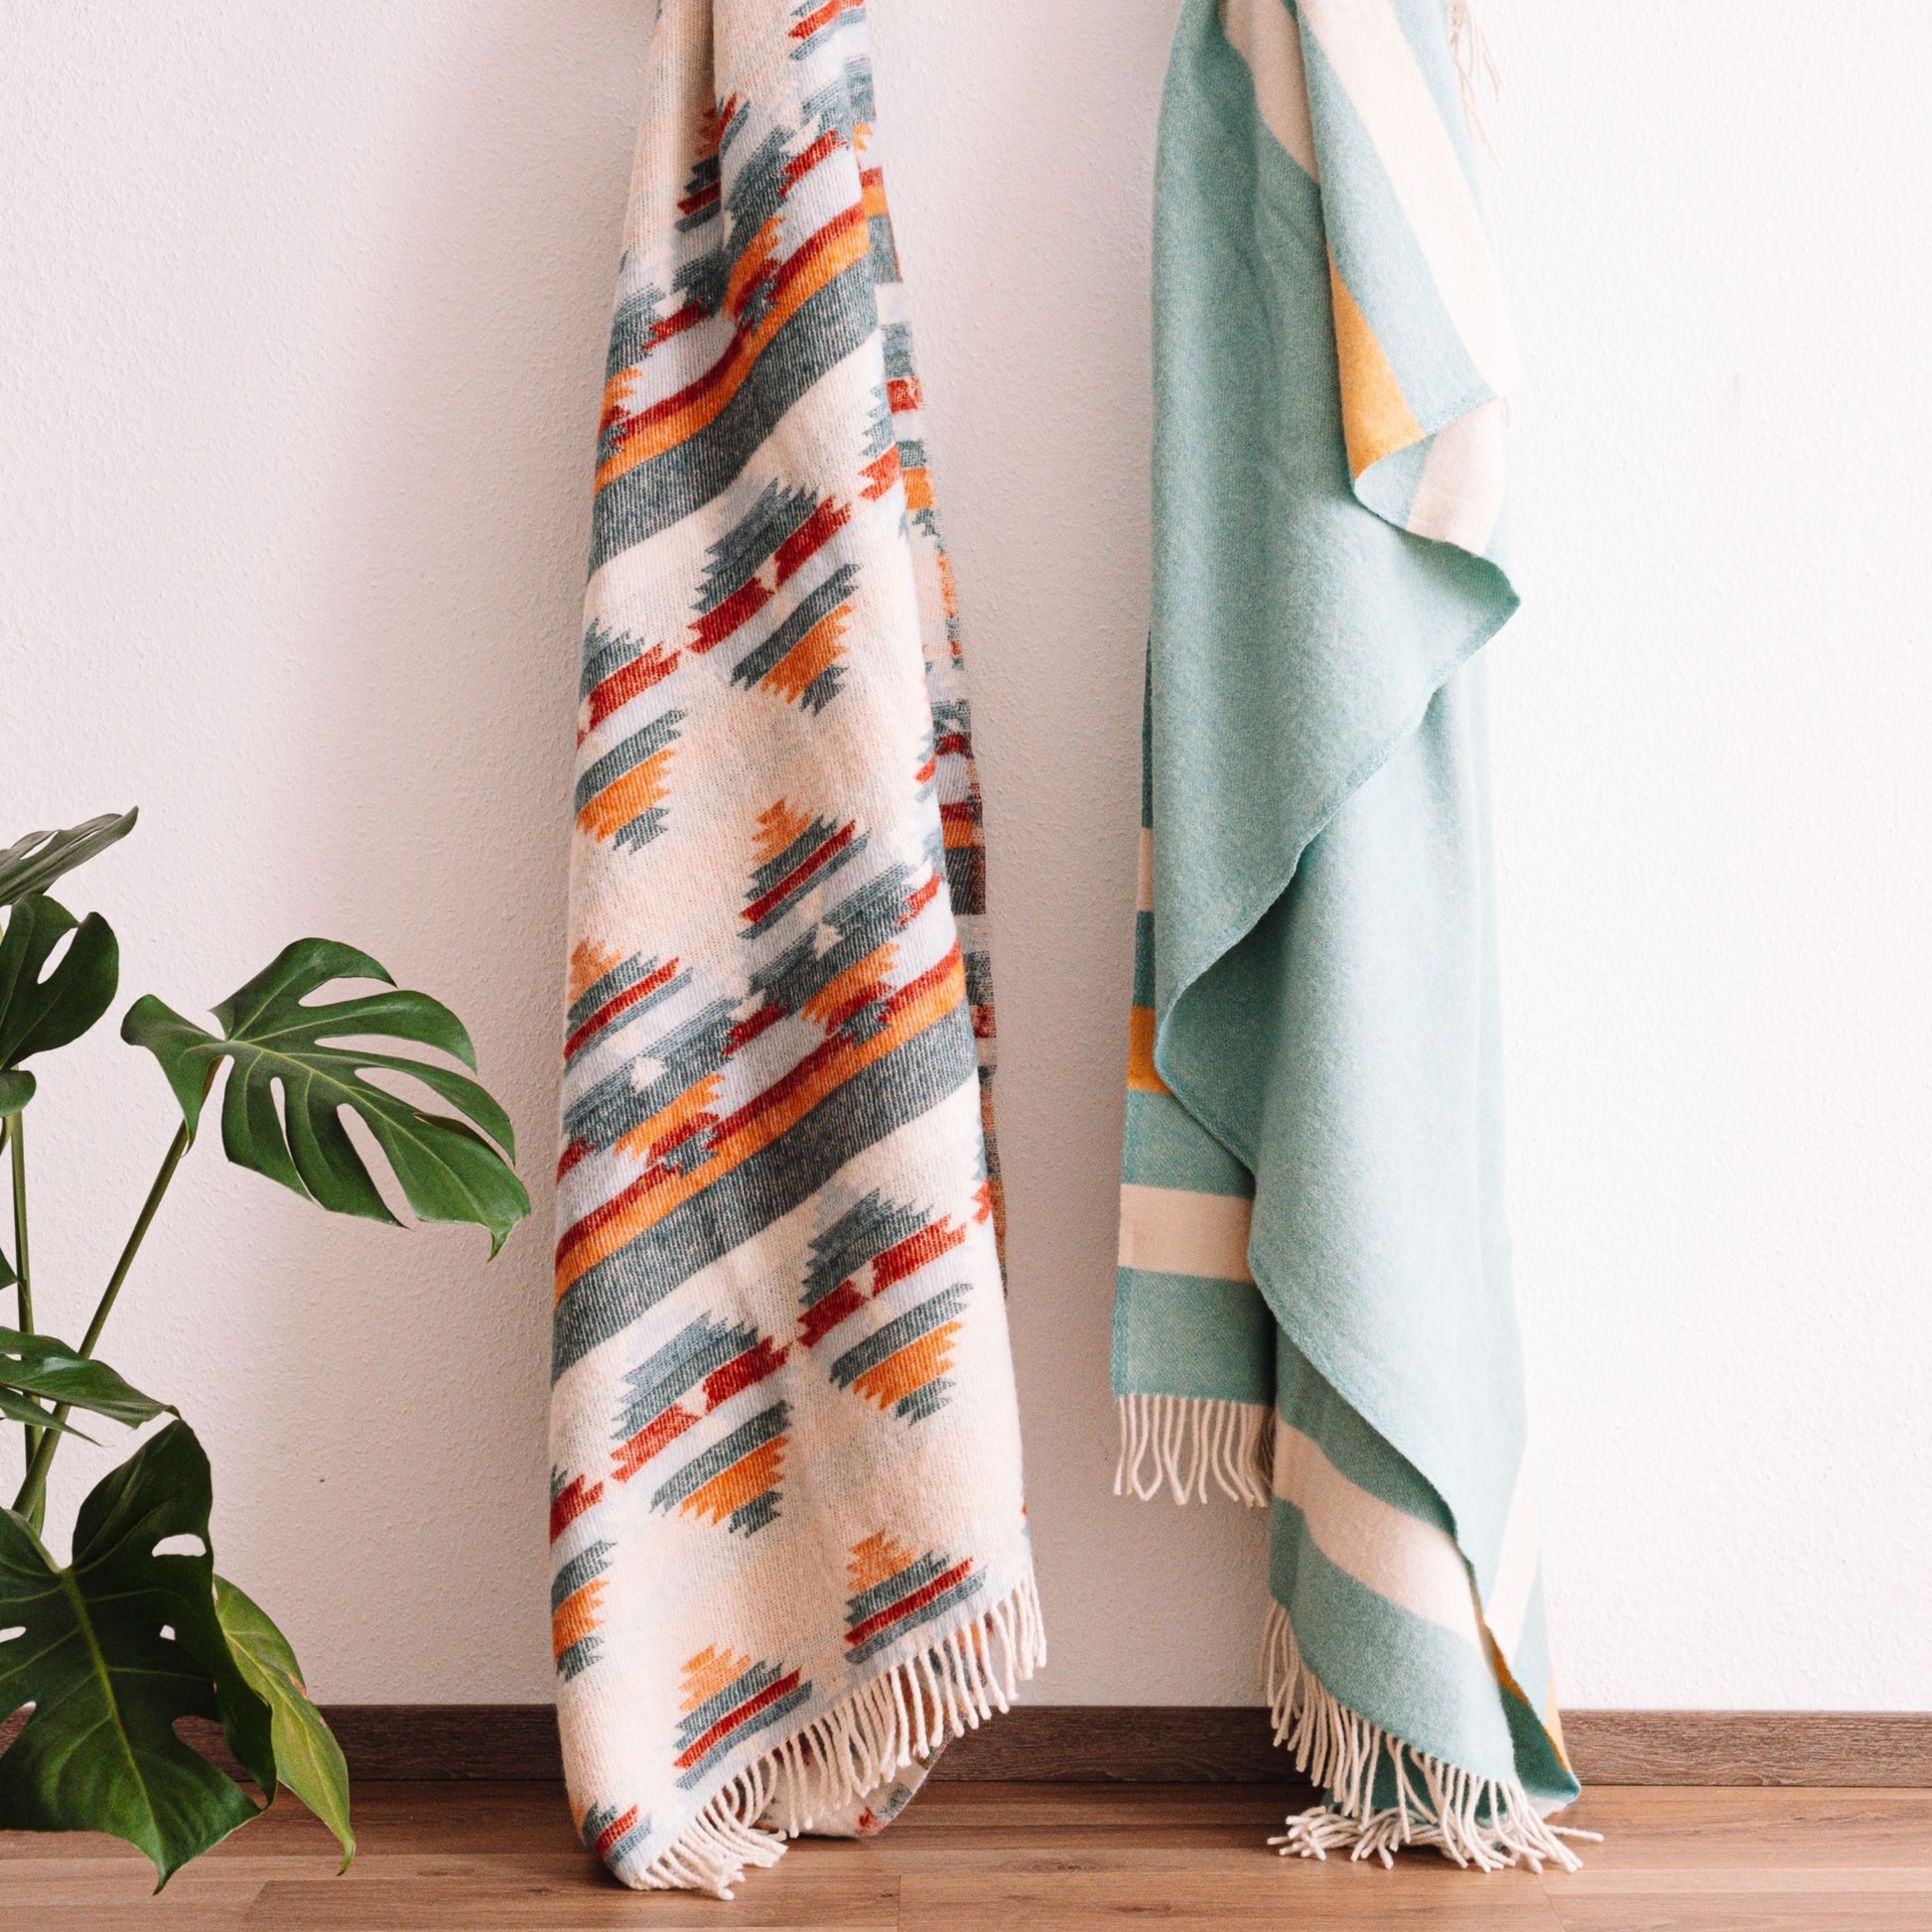 Zwei farbenfrohe Decken hängen nebeneinander